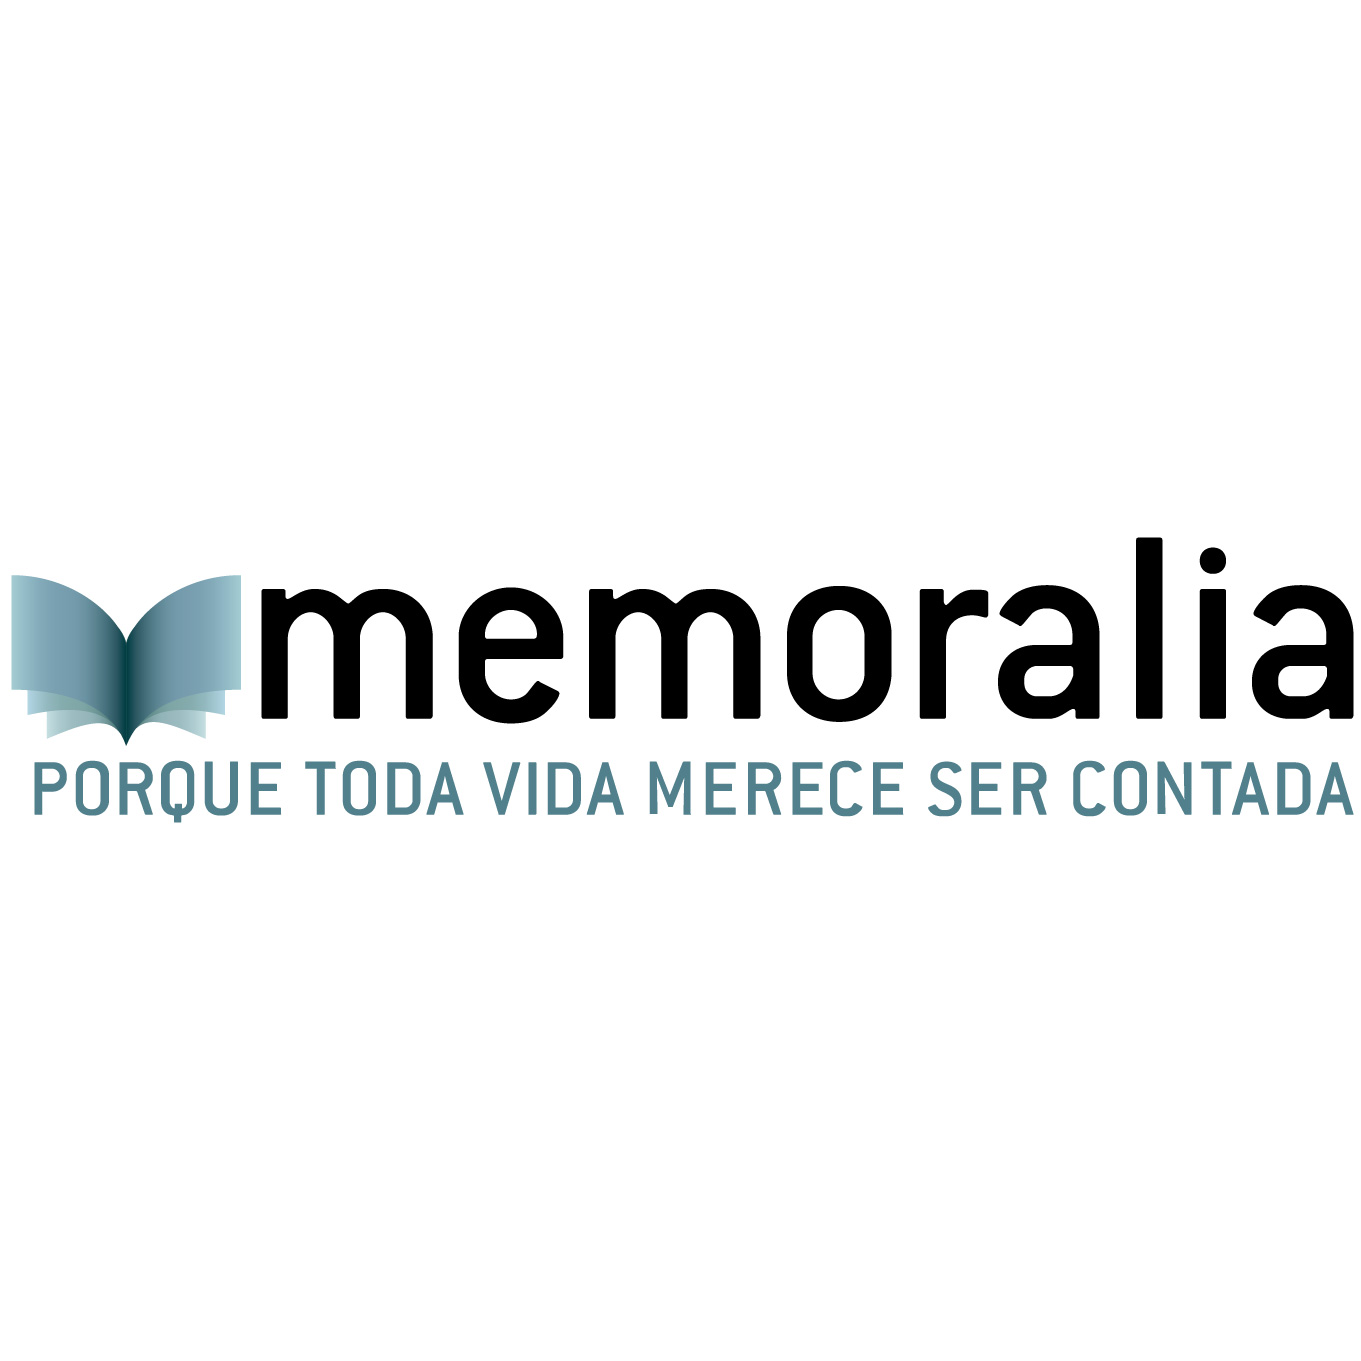 (c) Memoralia.es